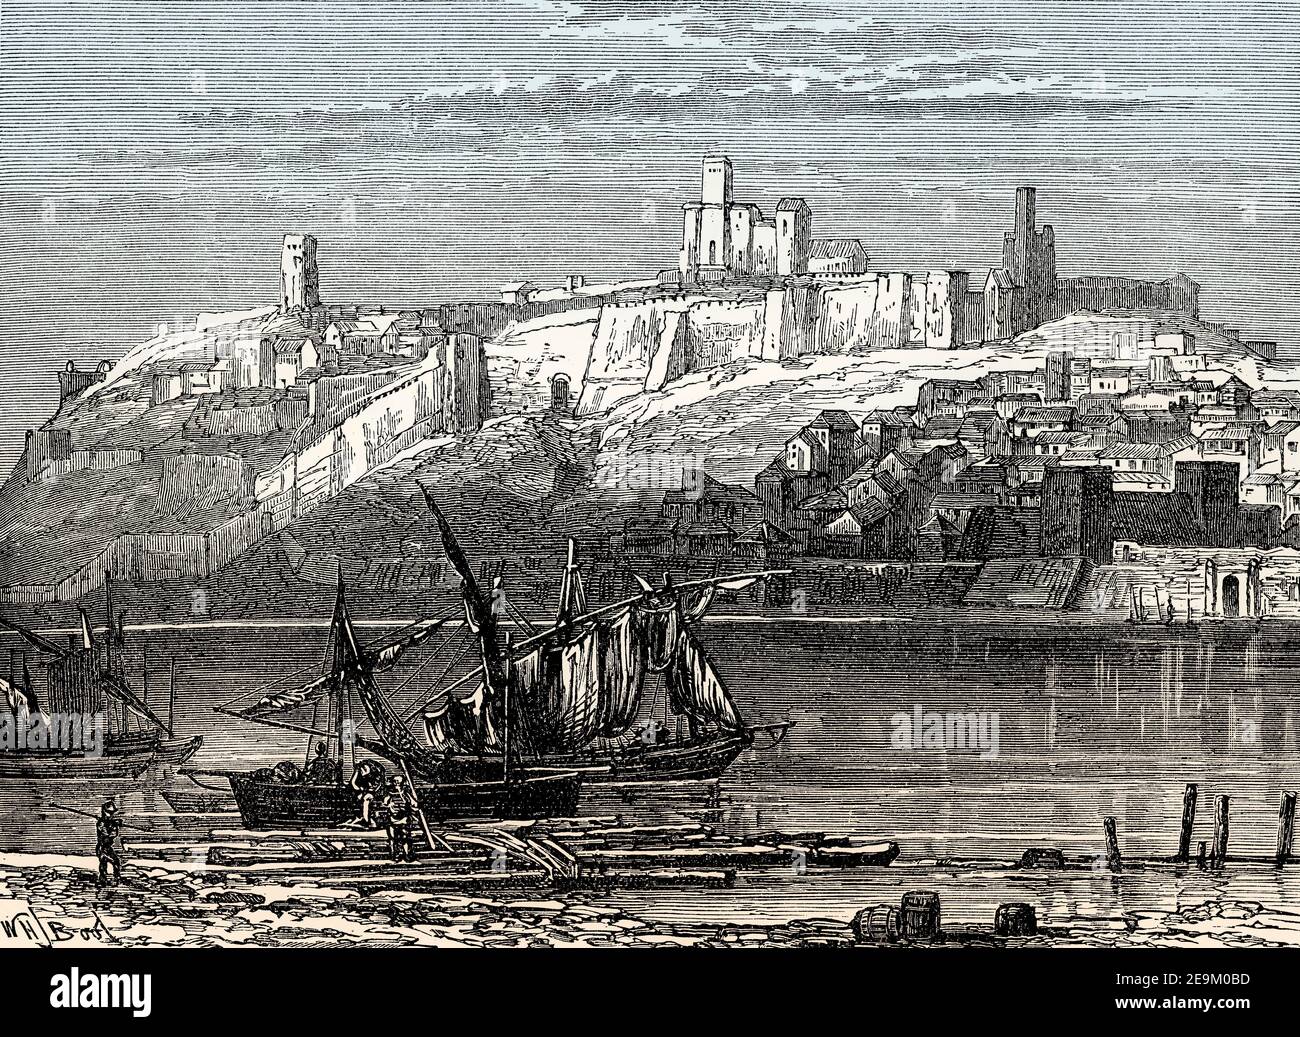 Vue historique de Badajoz, début XIXe siècle, province de Badajoz, Espagne, des batailles britanniques sur terre et mer, par James Grant Banque D'Images